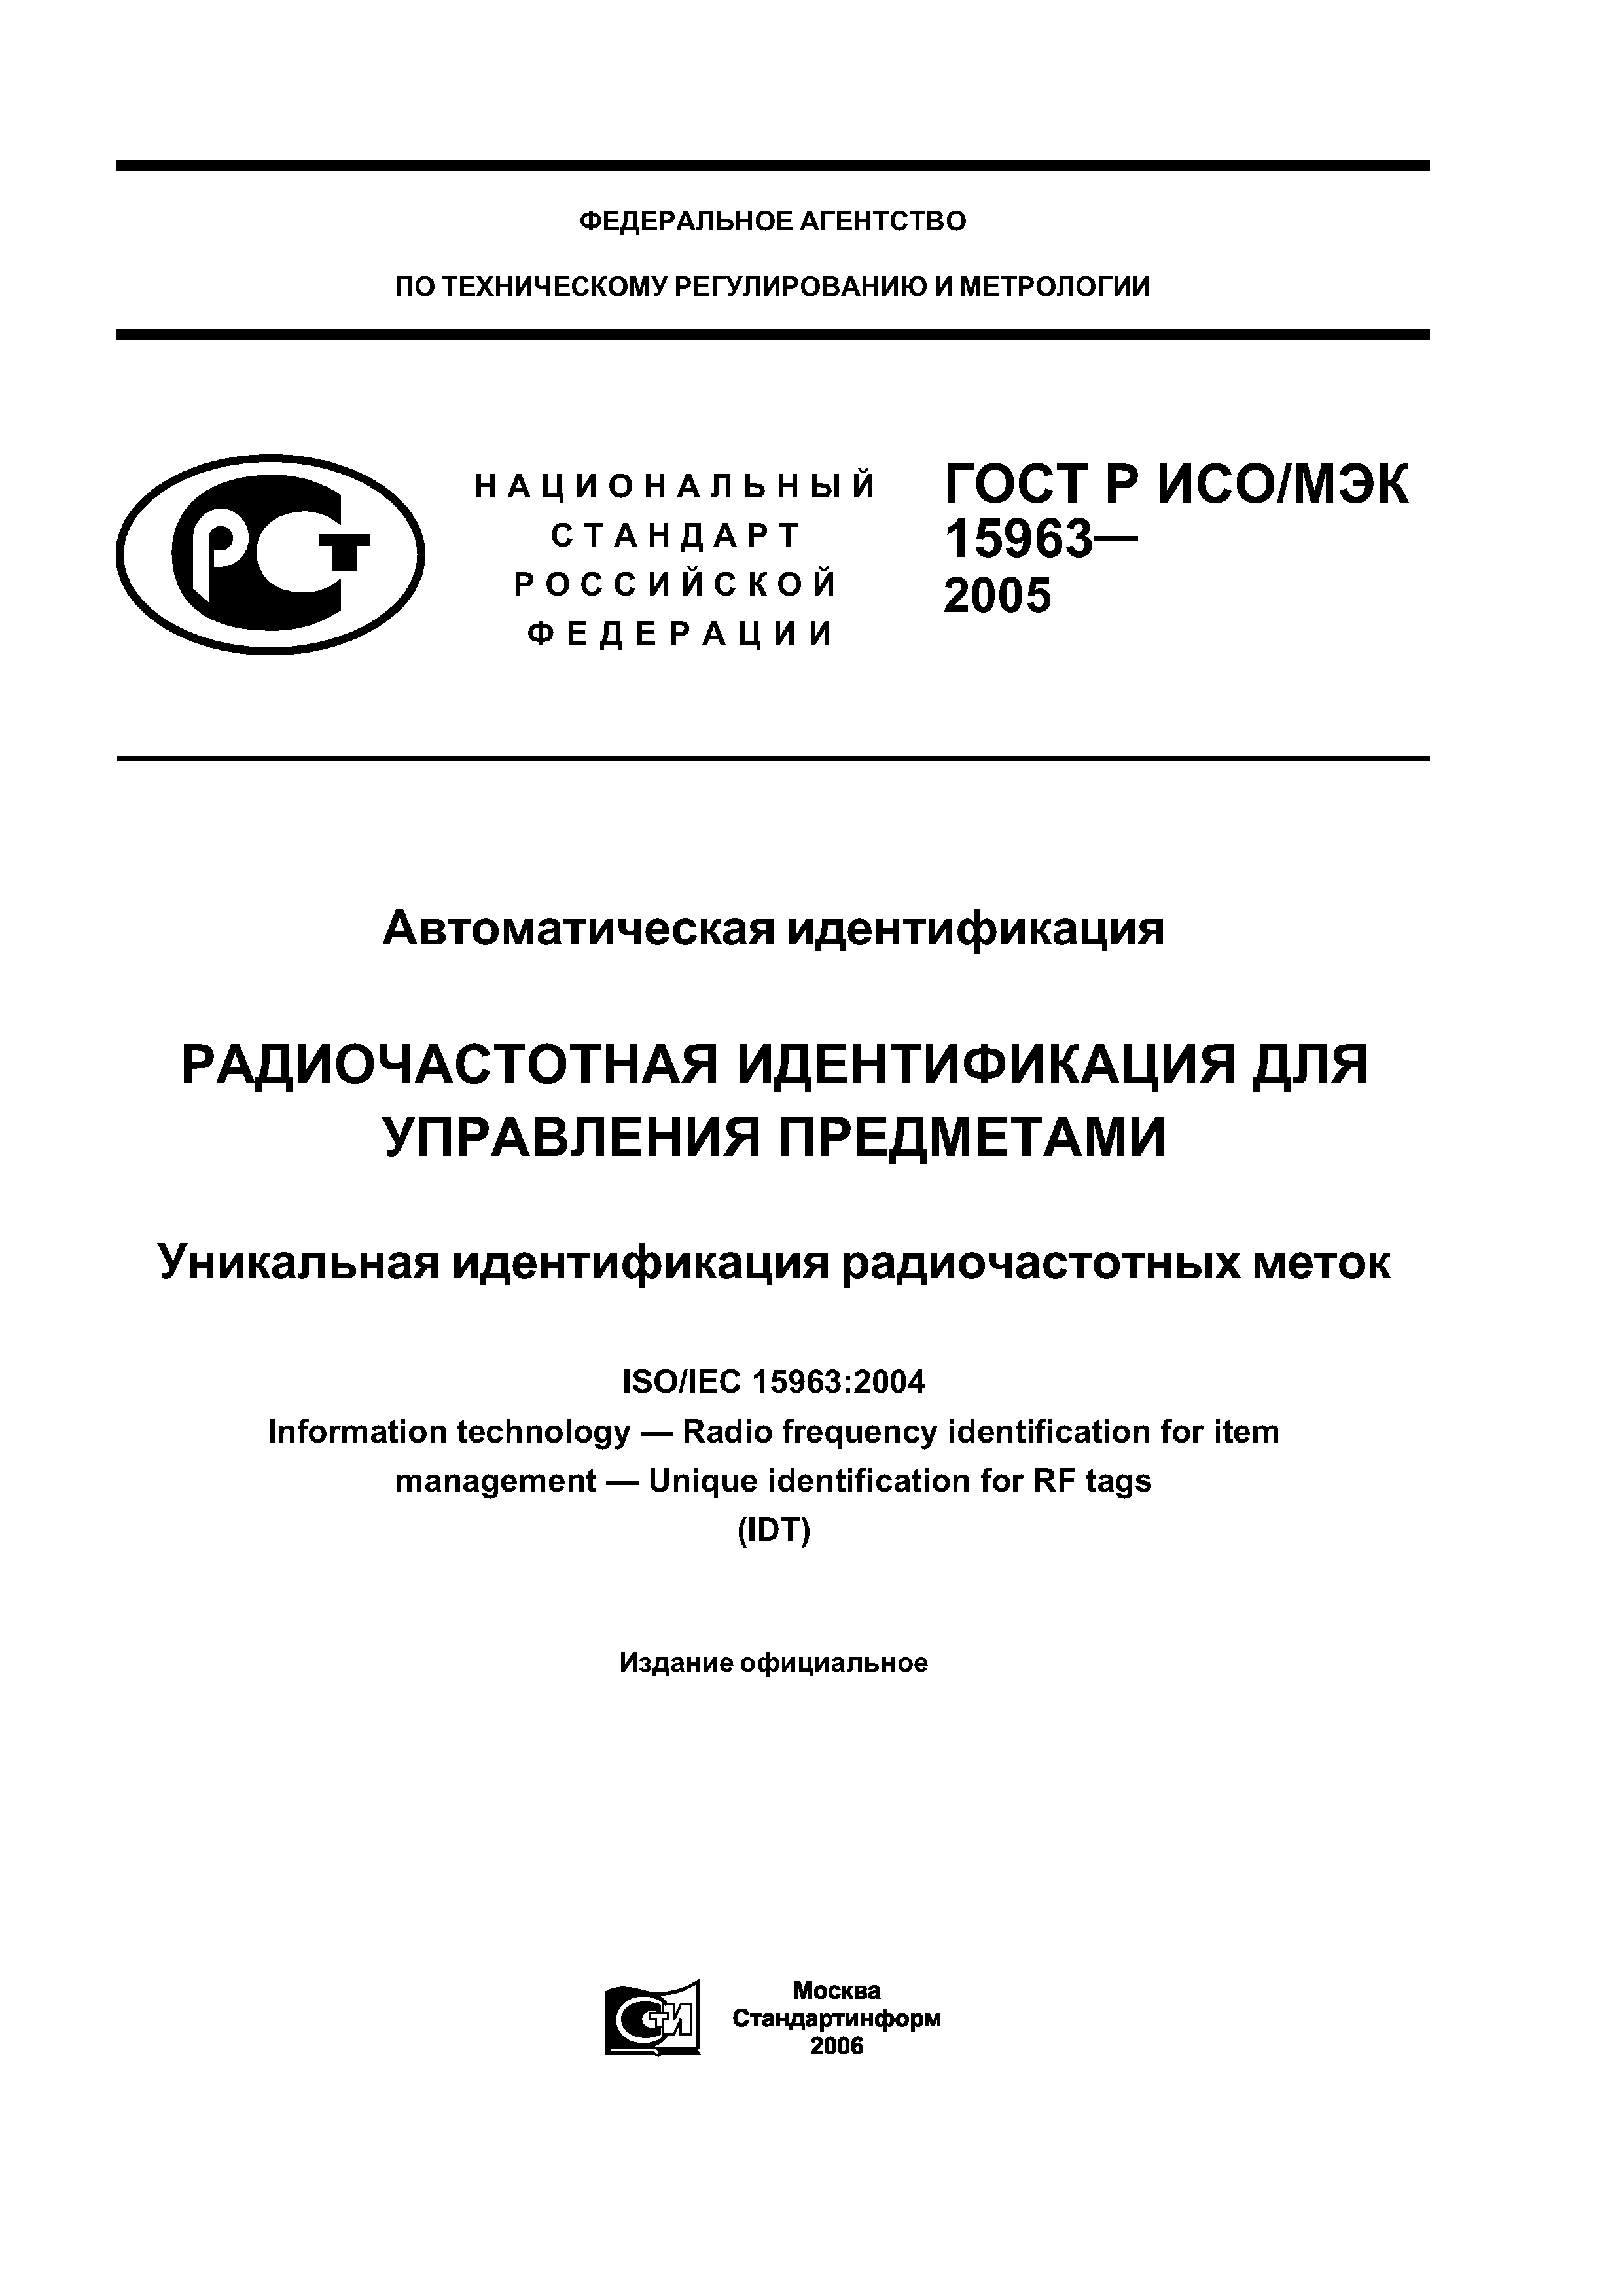 ГОСТ Р ИСО/МЭК 15963-2005